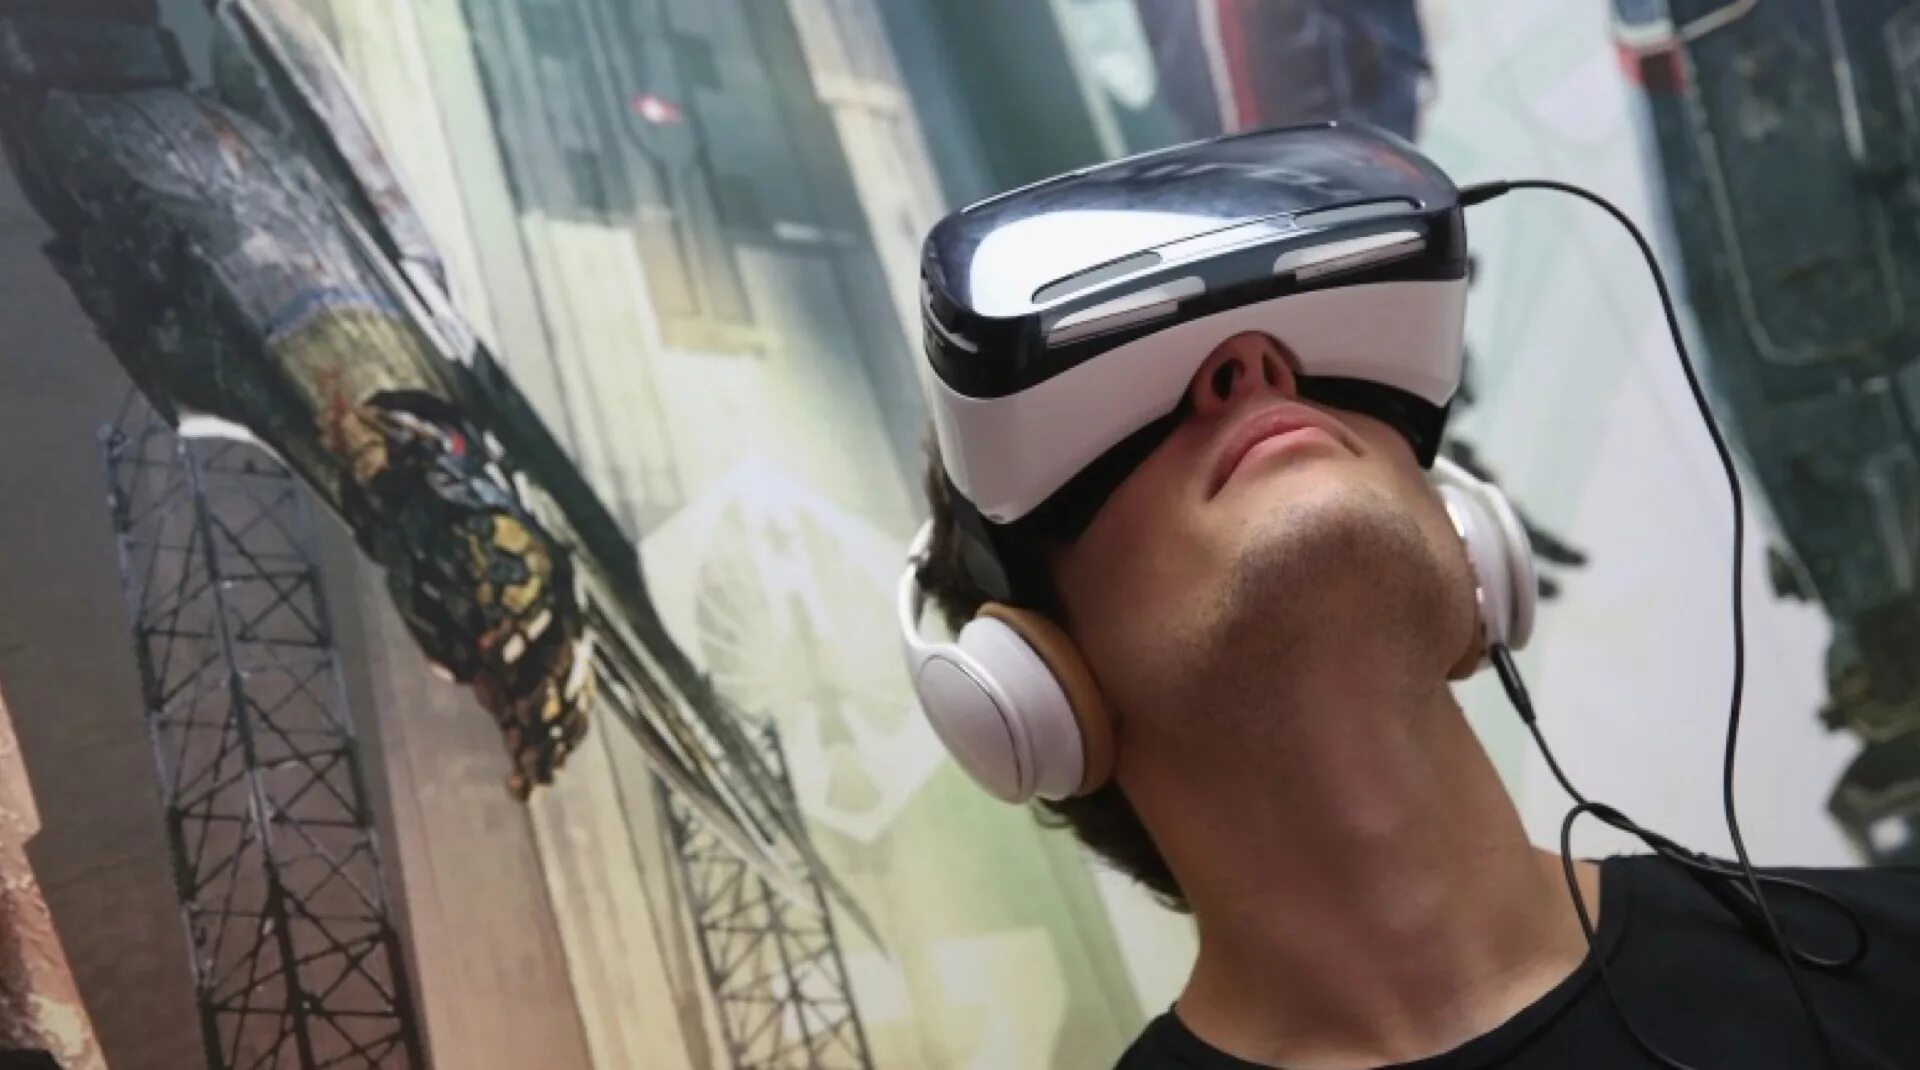 Samsung Gear шлем. Окулус шлем виртуальной реальности. Виртуальная реальность (Virtual reality, VR). Человек в шлеме виртуальной реальности.